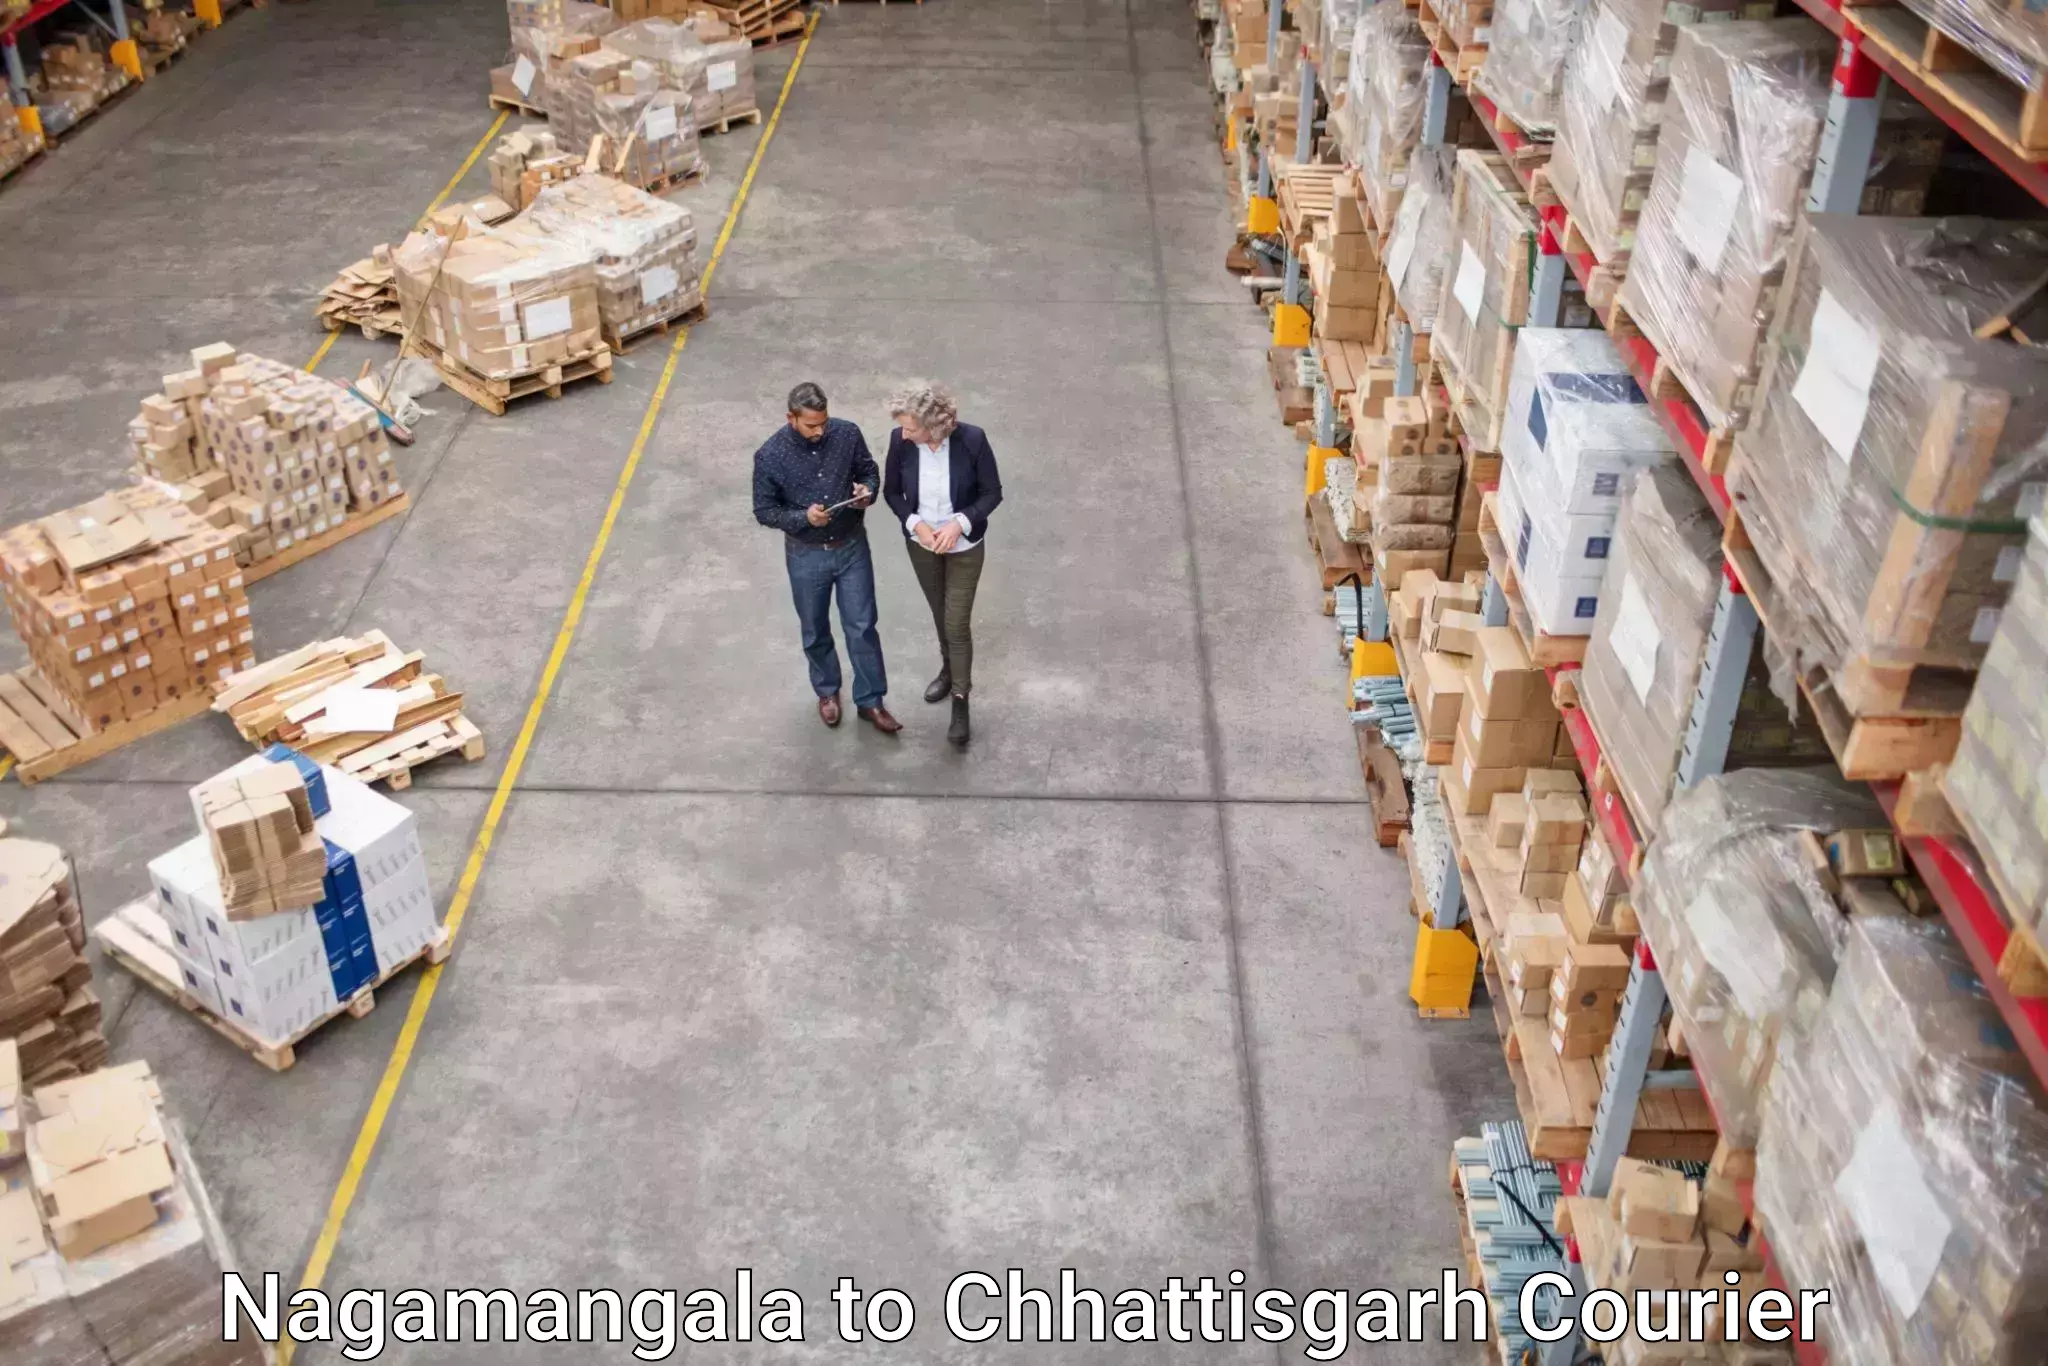 Local delivery service Nagamangala to Chhattisgarh